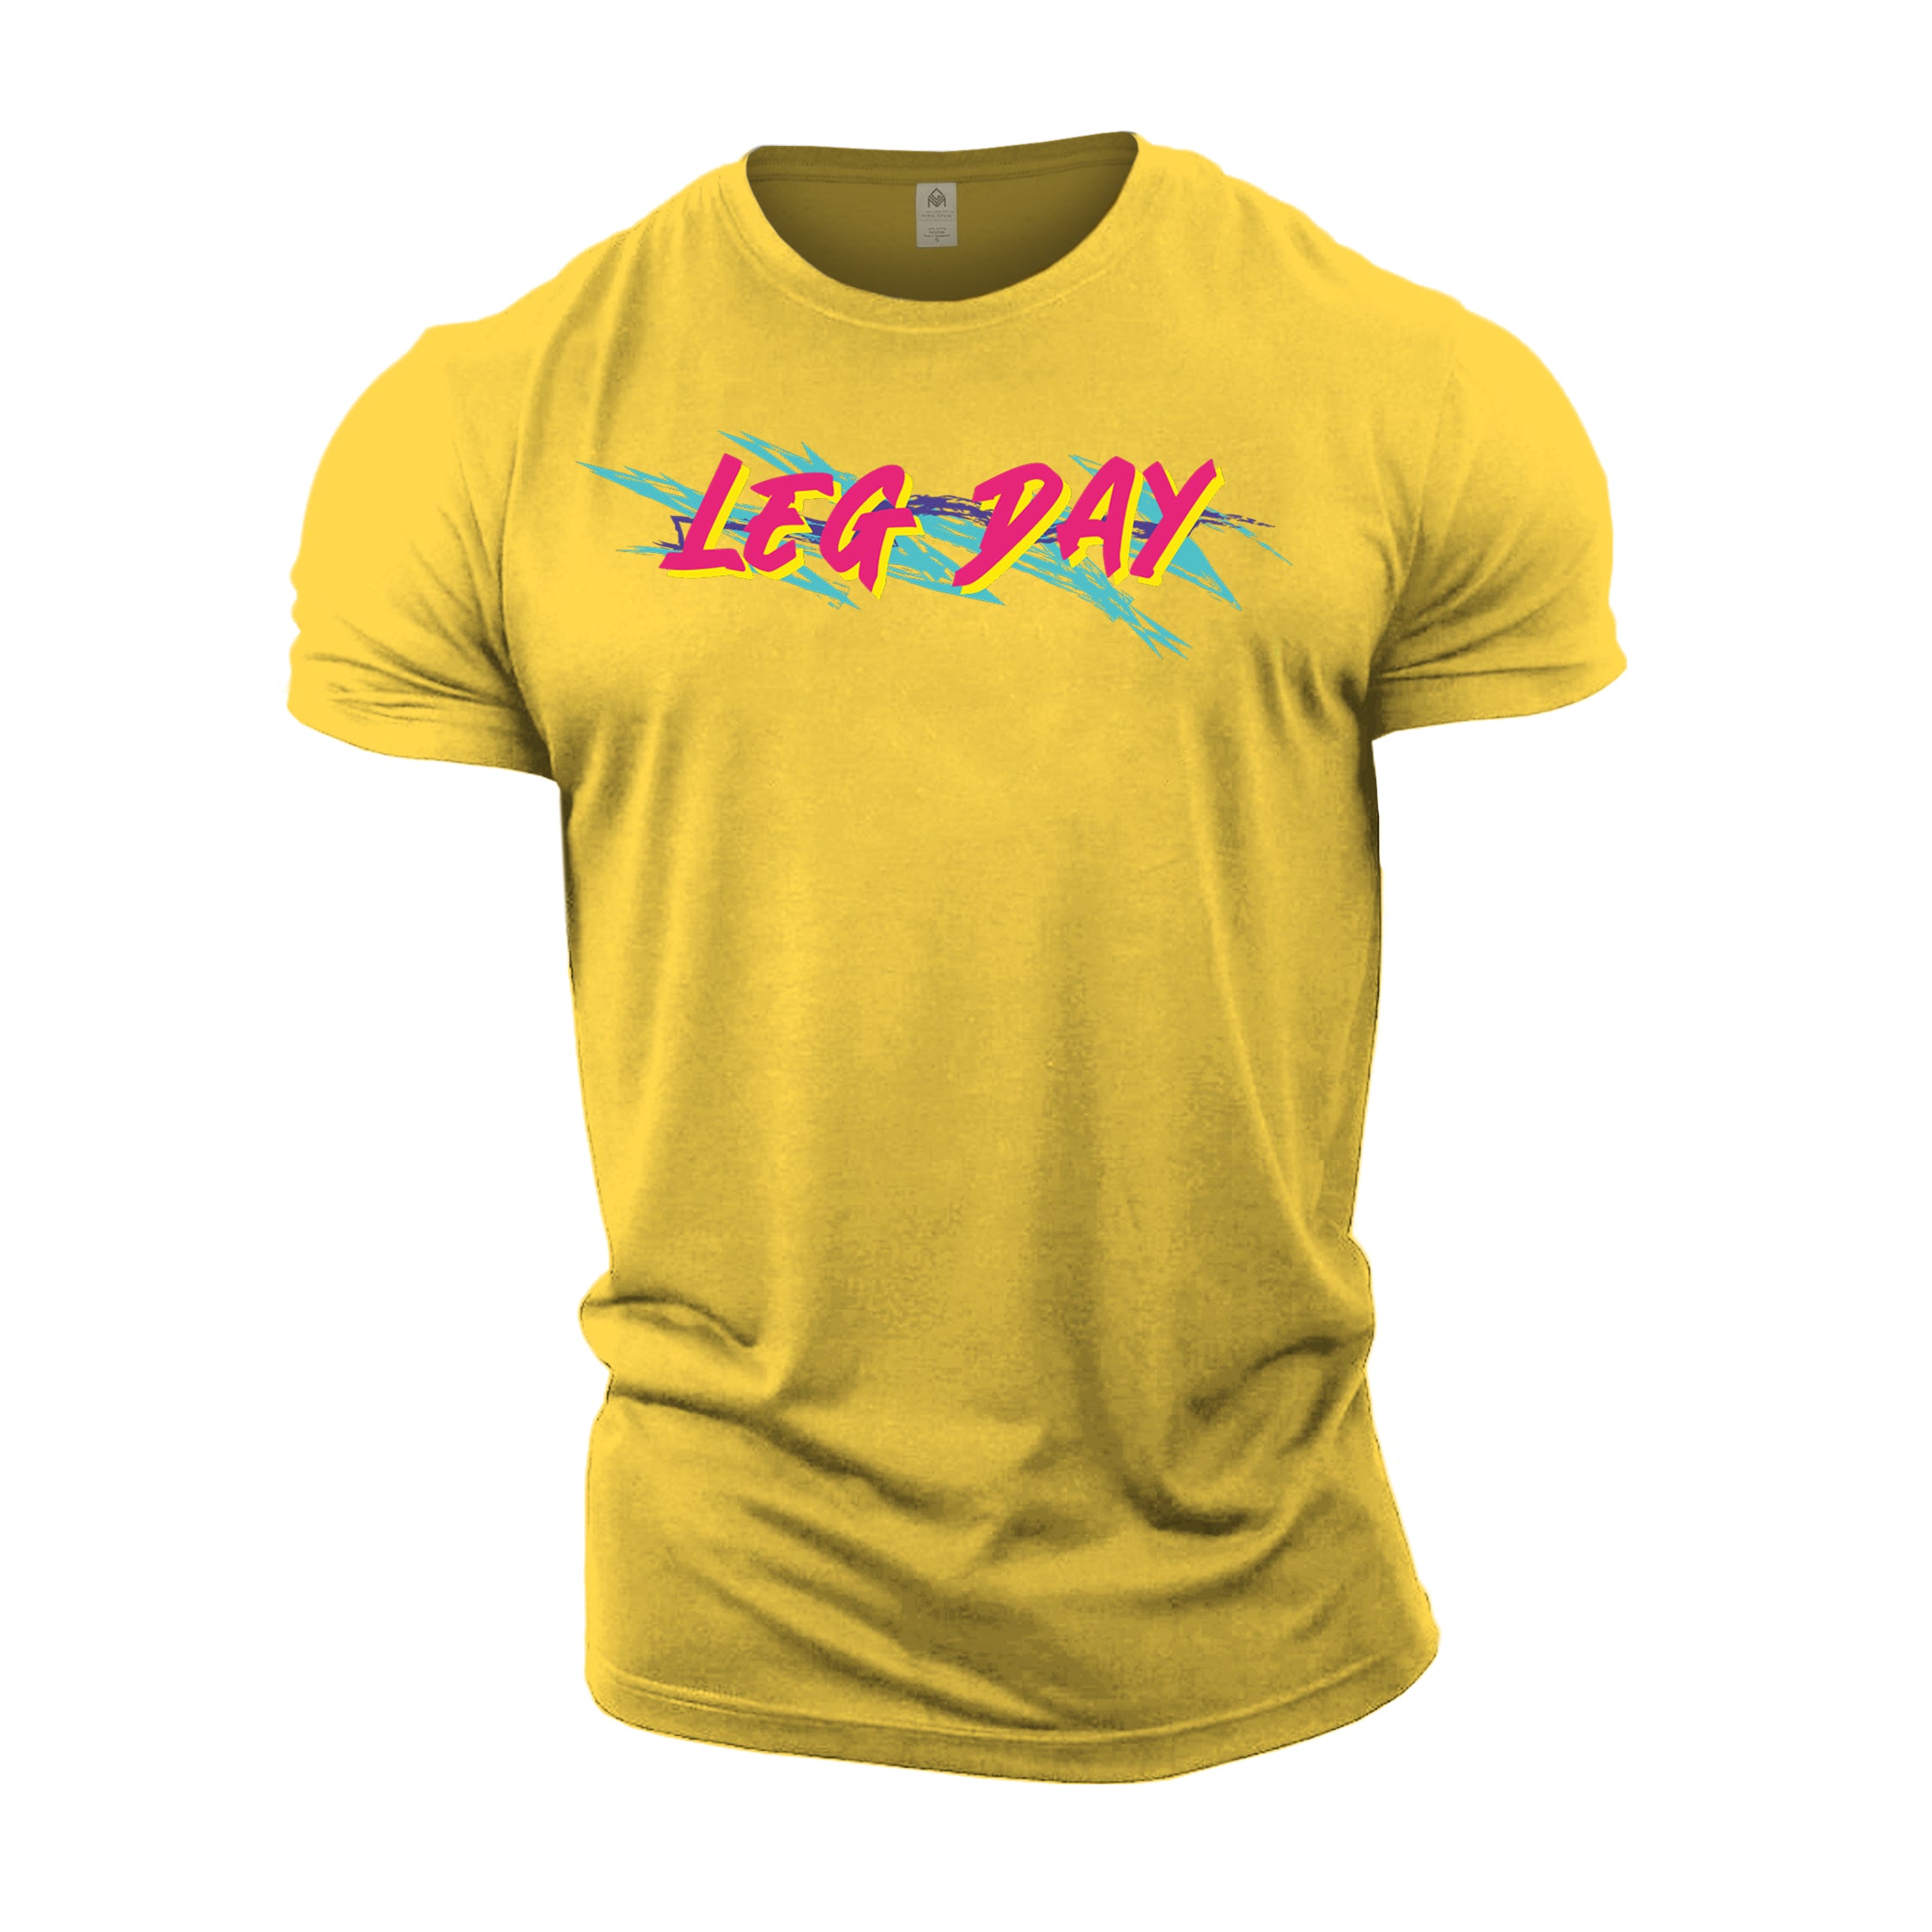 Retro Leg Day - Gym T-Shirt